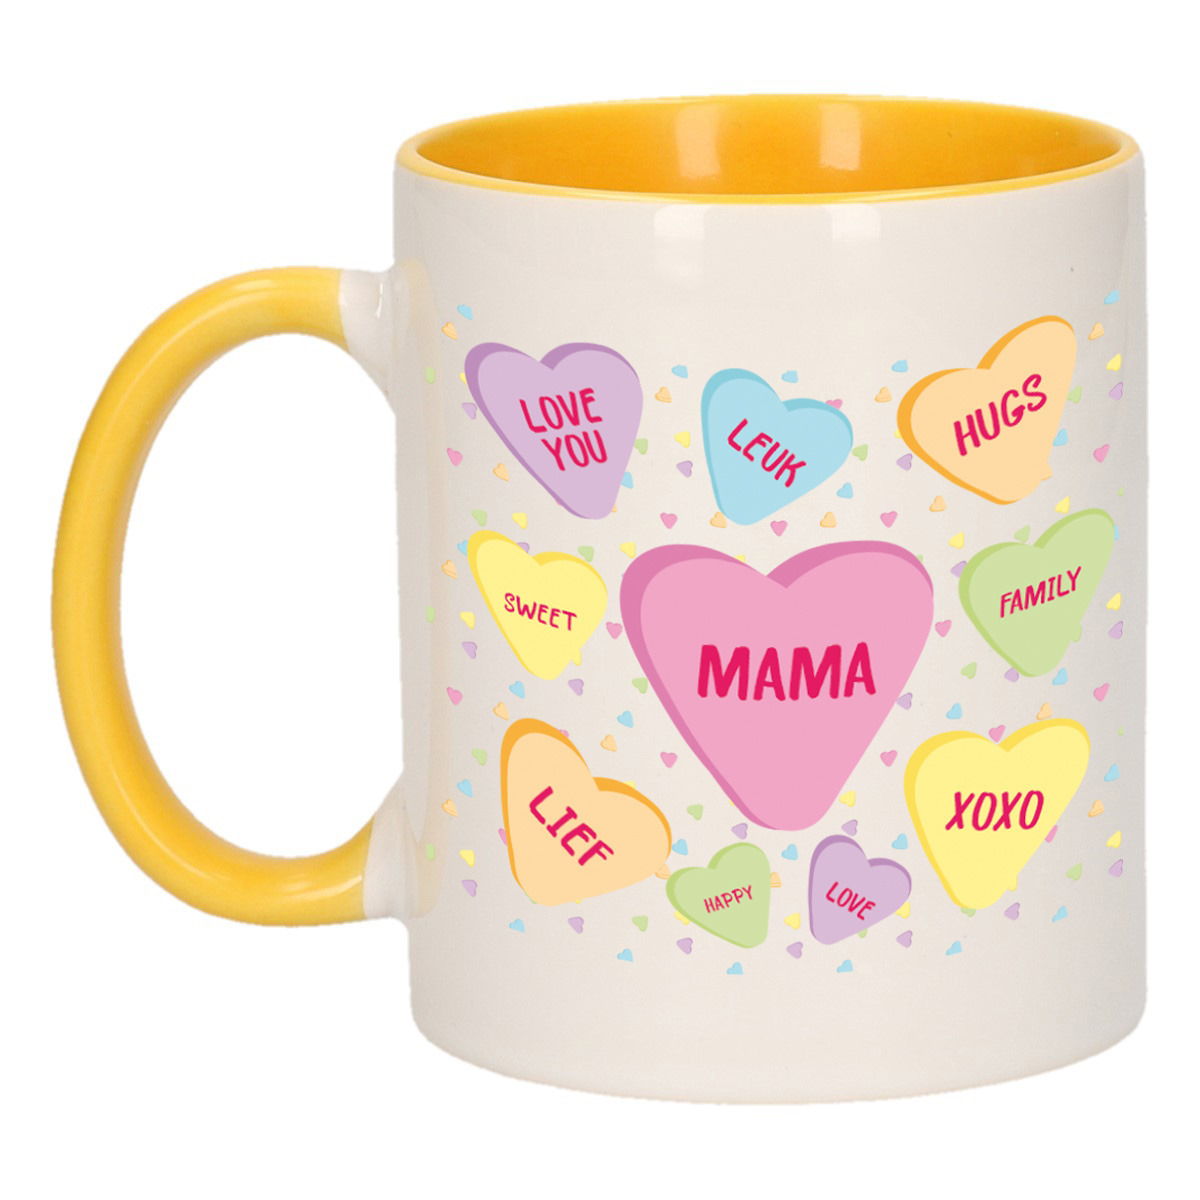 Moederdag cadeau koffiemok hartjes snoepjes geel mok met tekst verjaardag mama-moeder